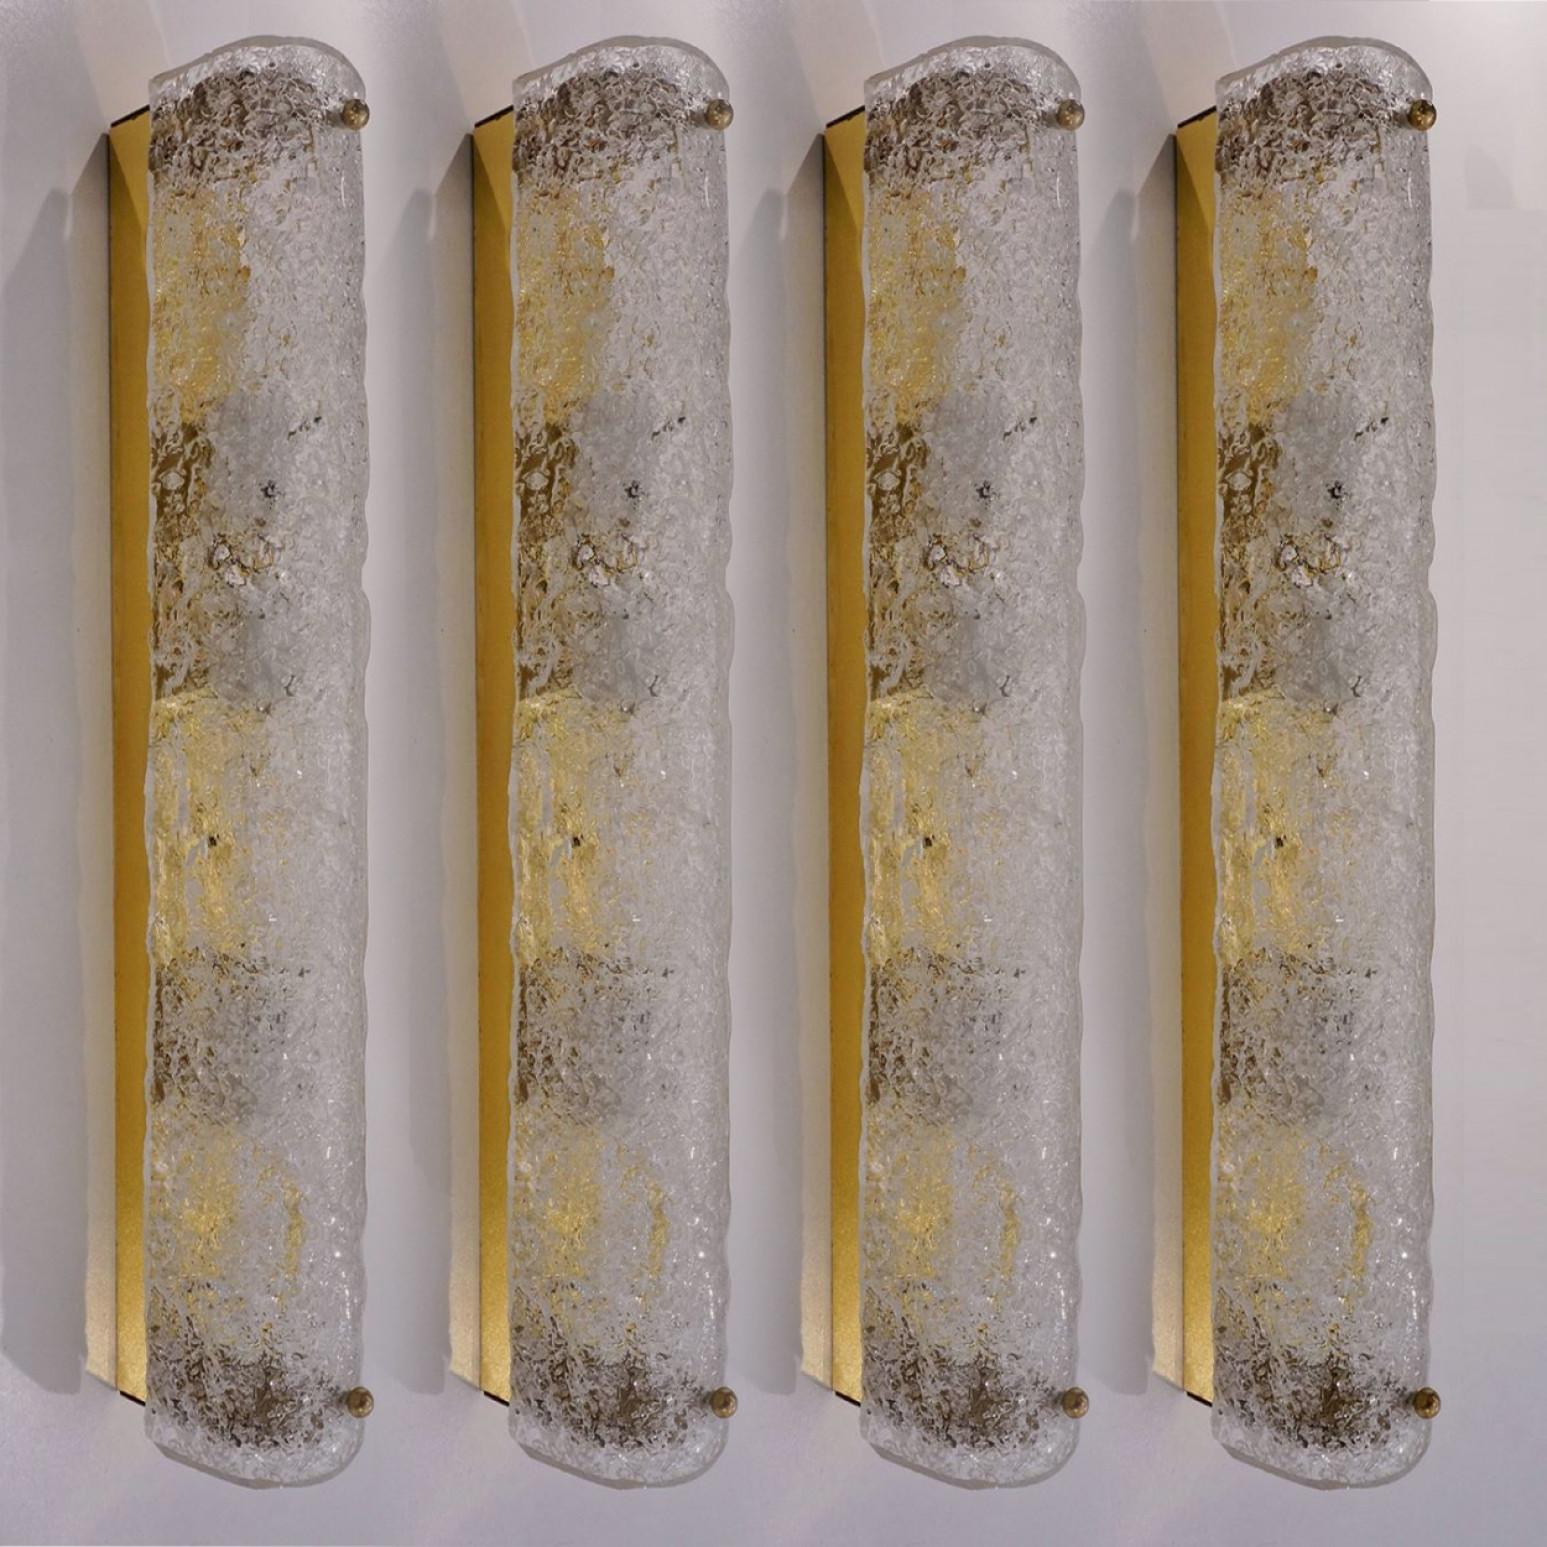 L'une des quatre appliques haut de gamme en verre de Murano sur base en laiton de Hillebrand, Allemagne, vers les années 1960. Il est composé d'un abat-jour tubulaire en cristal clair de qualité texturée simulant la glace sur un cadre en laiton. Le